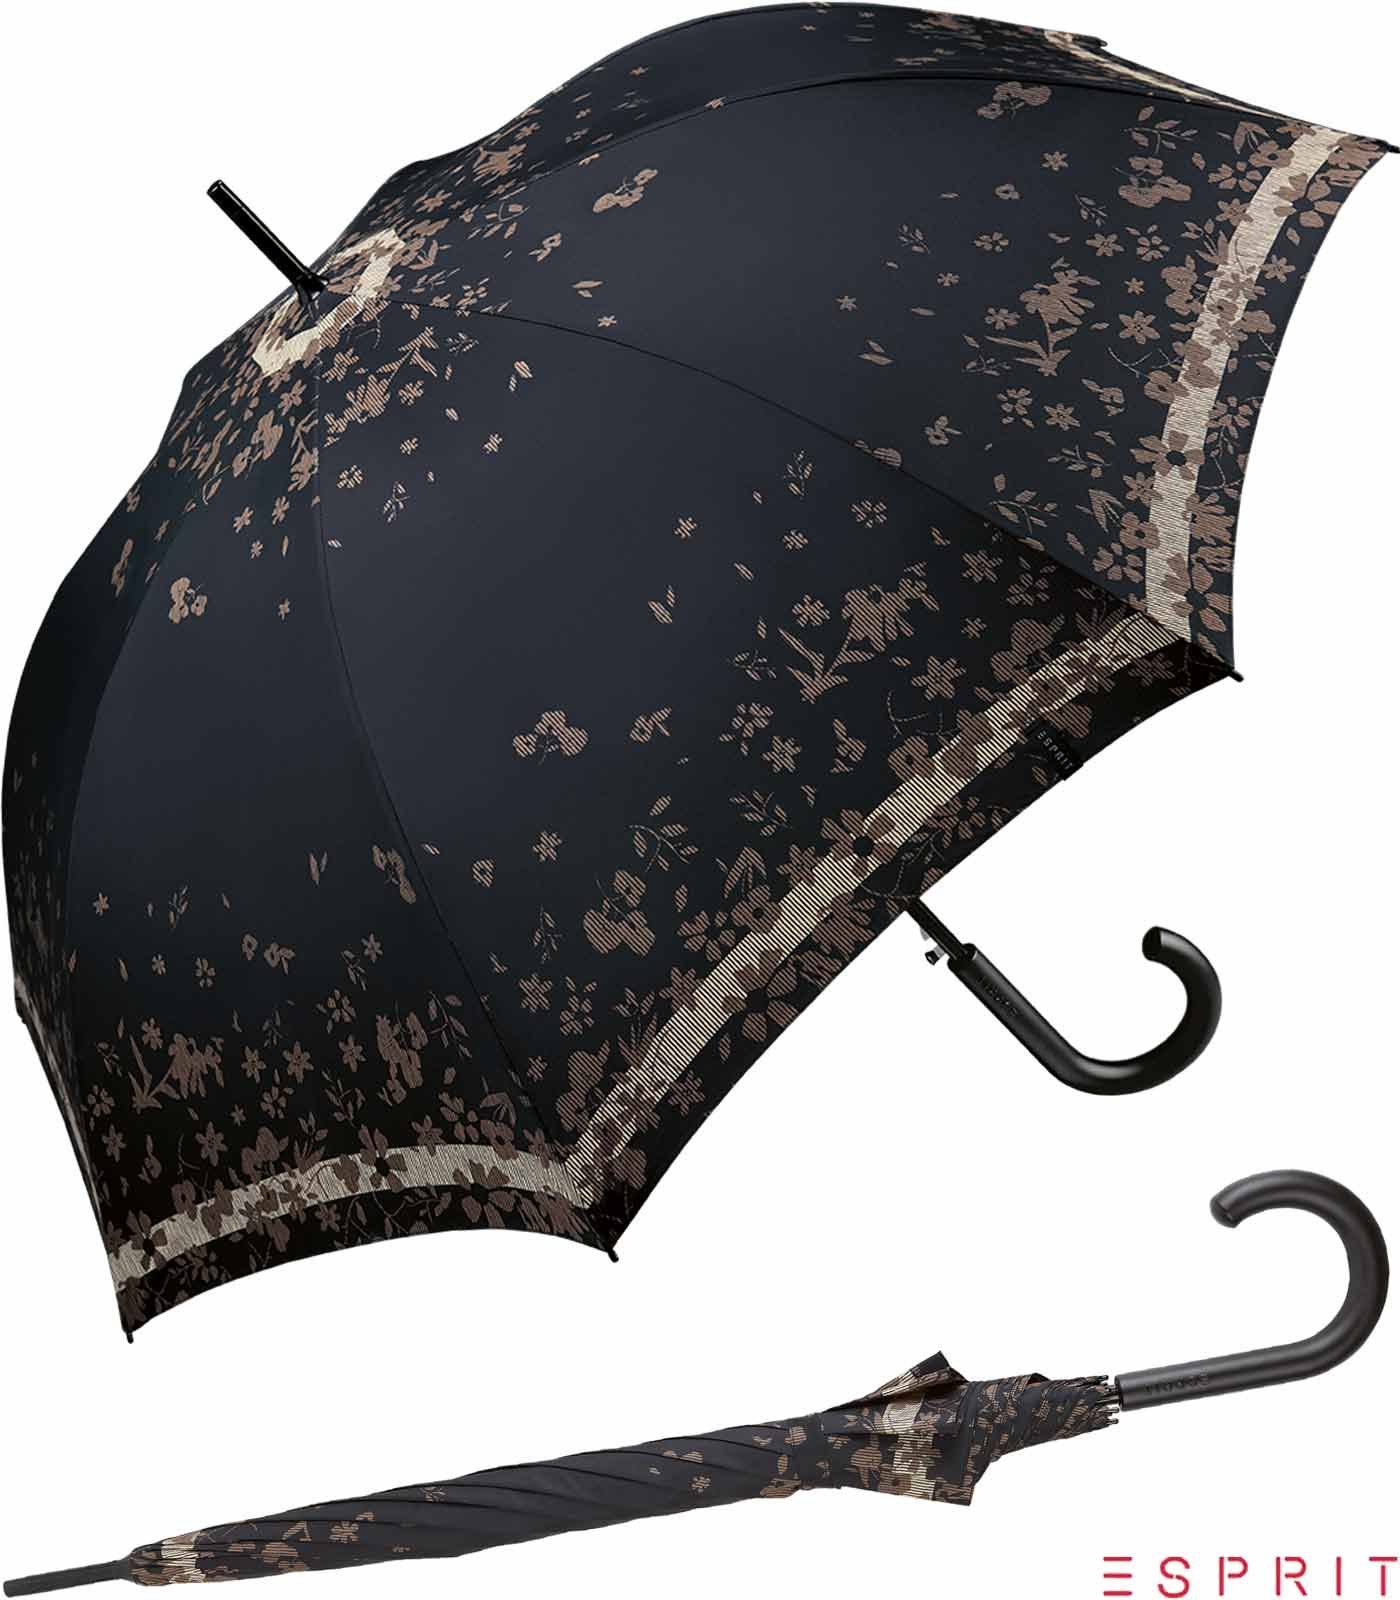 Esprit Langregenschirm Damen mit Auf-Automatik Poetry Flower - black, groß, stabil, mit Blumenmuster schwarz